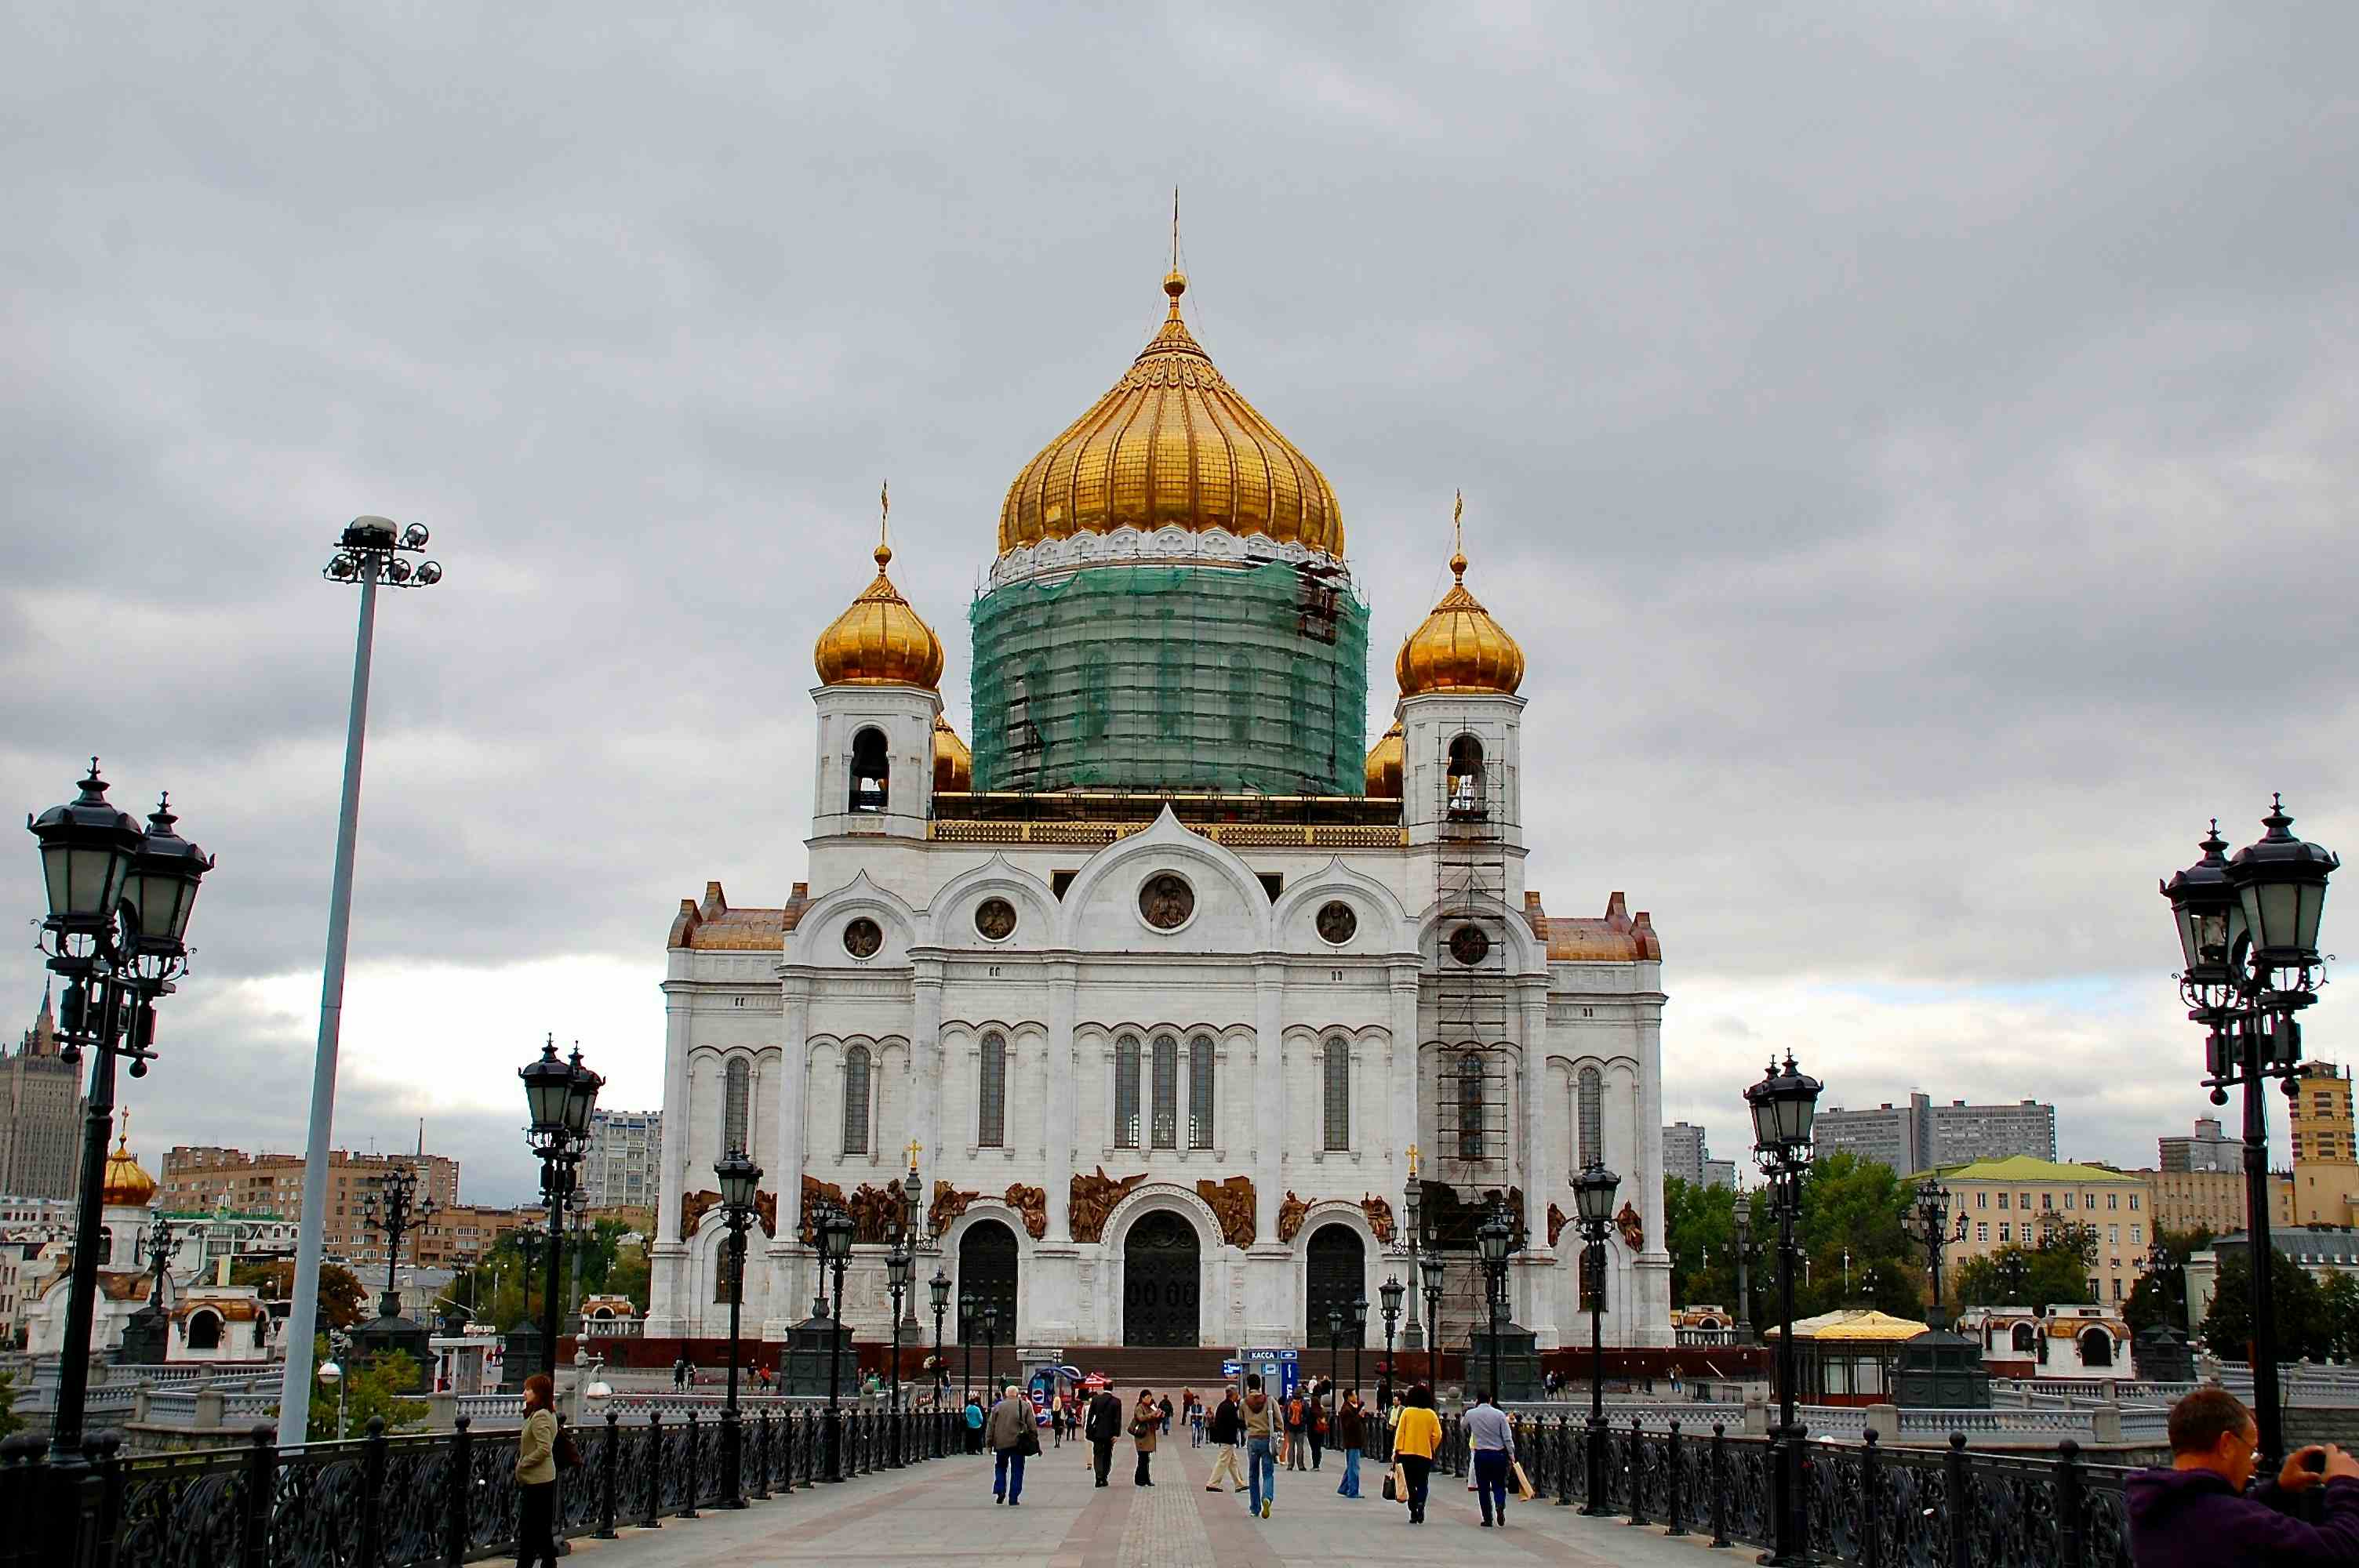 Christ-Erlöser-Kathedrale, die grösste Kirche der russisch-orthodoxen Religionsgemeinschaft